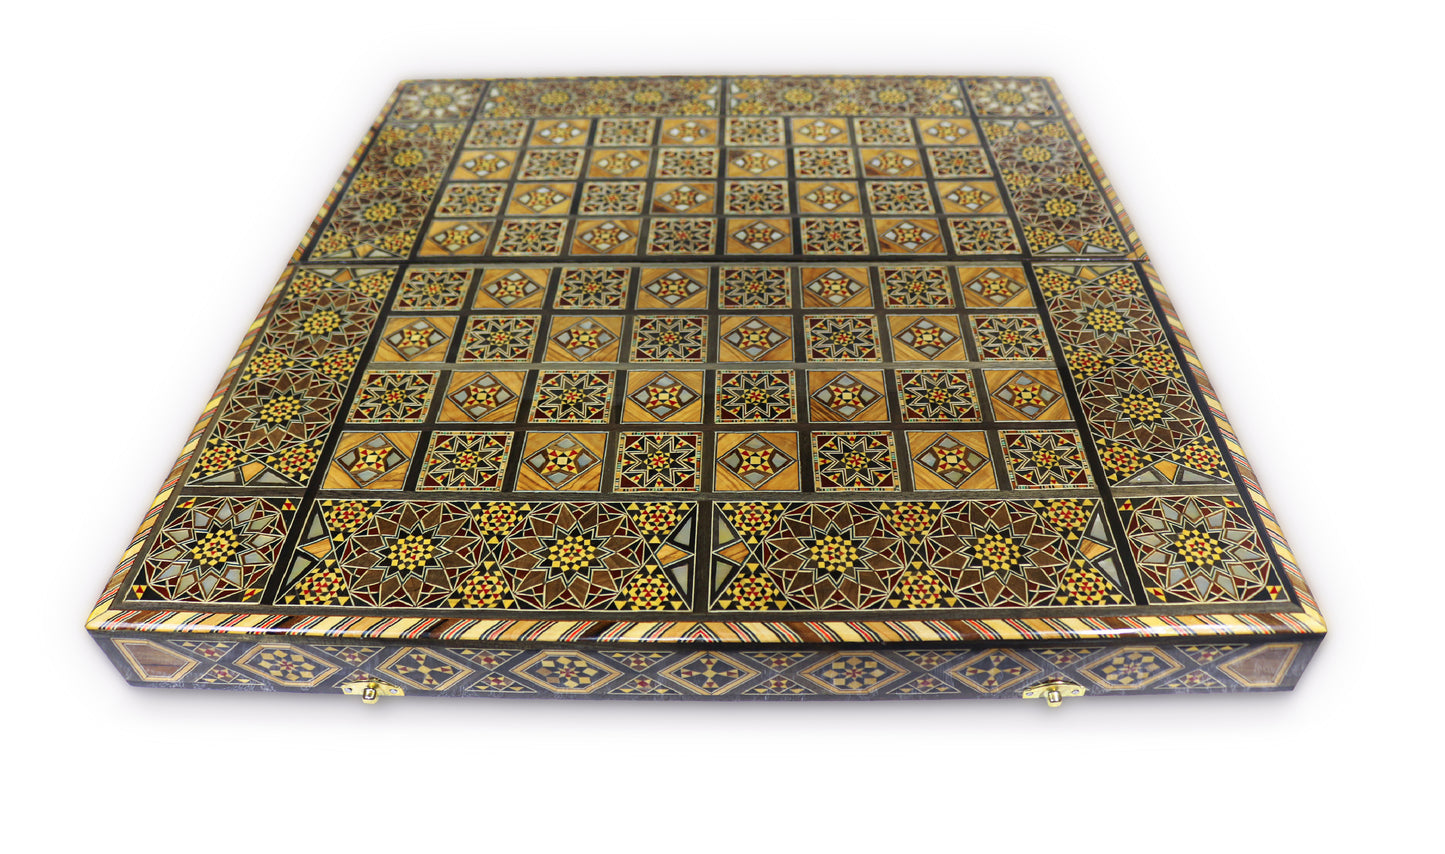 Neu 53 x 53 cm Holz Backgammon/Schachspiel/Dama Brett  K 6-1-53 mit Holz Backgammon Steine